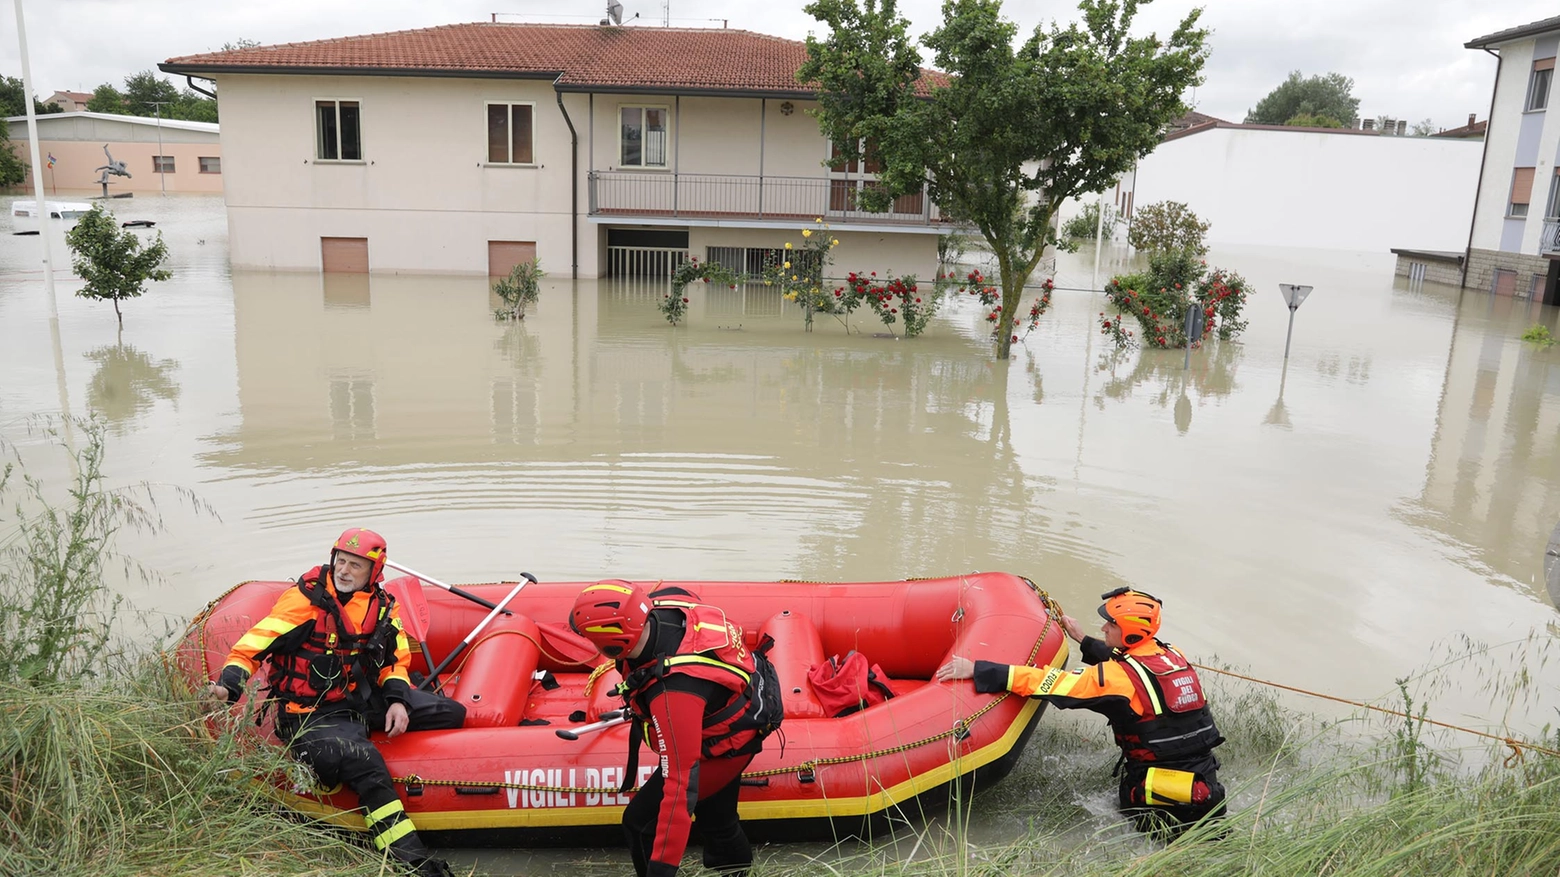 Alluvione a Faenza (foto Corelli)